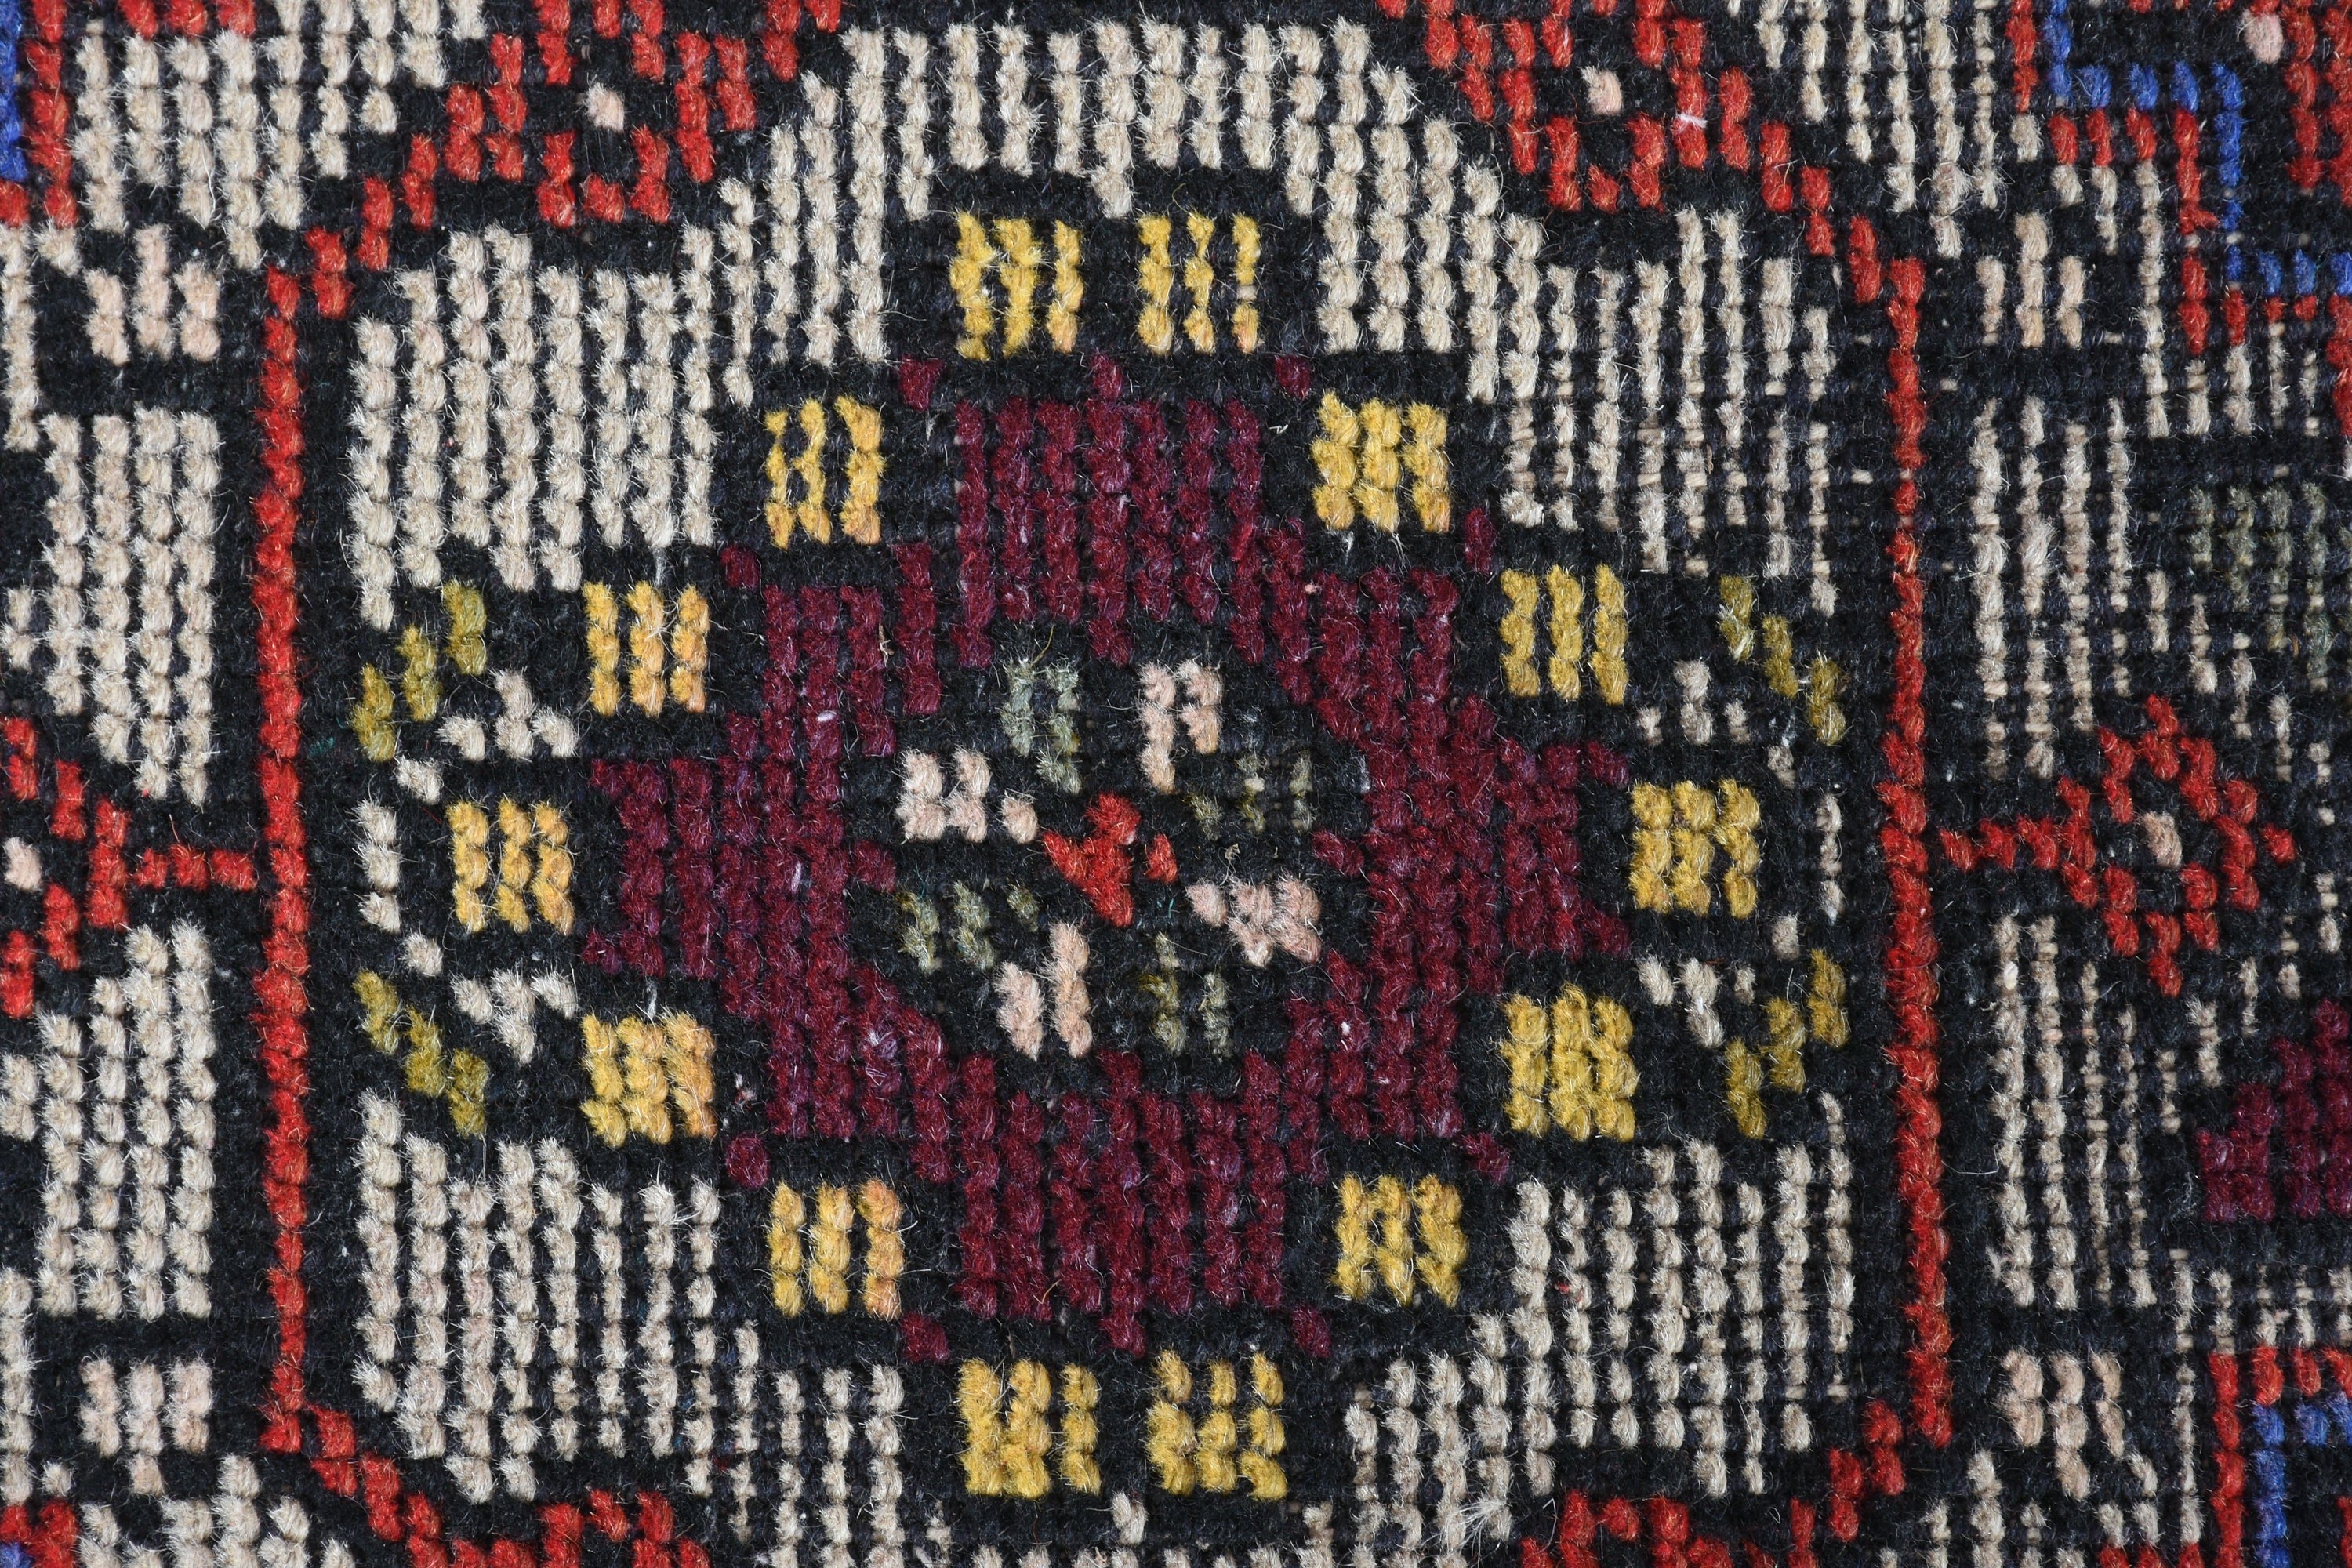 Bedroom Rug, Door Mat Rug, Moroccan Rugs, Red Wool Rug, 1.3x2.9 ft Small Rug, Vintage Rugs, Rugs for Nursery, Turkish Rug